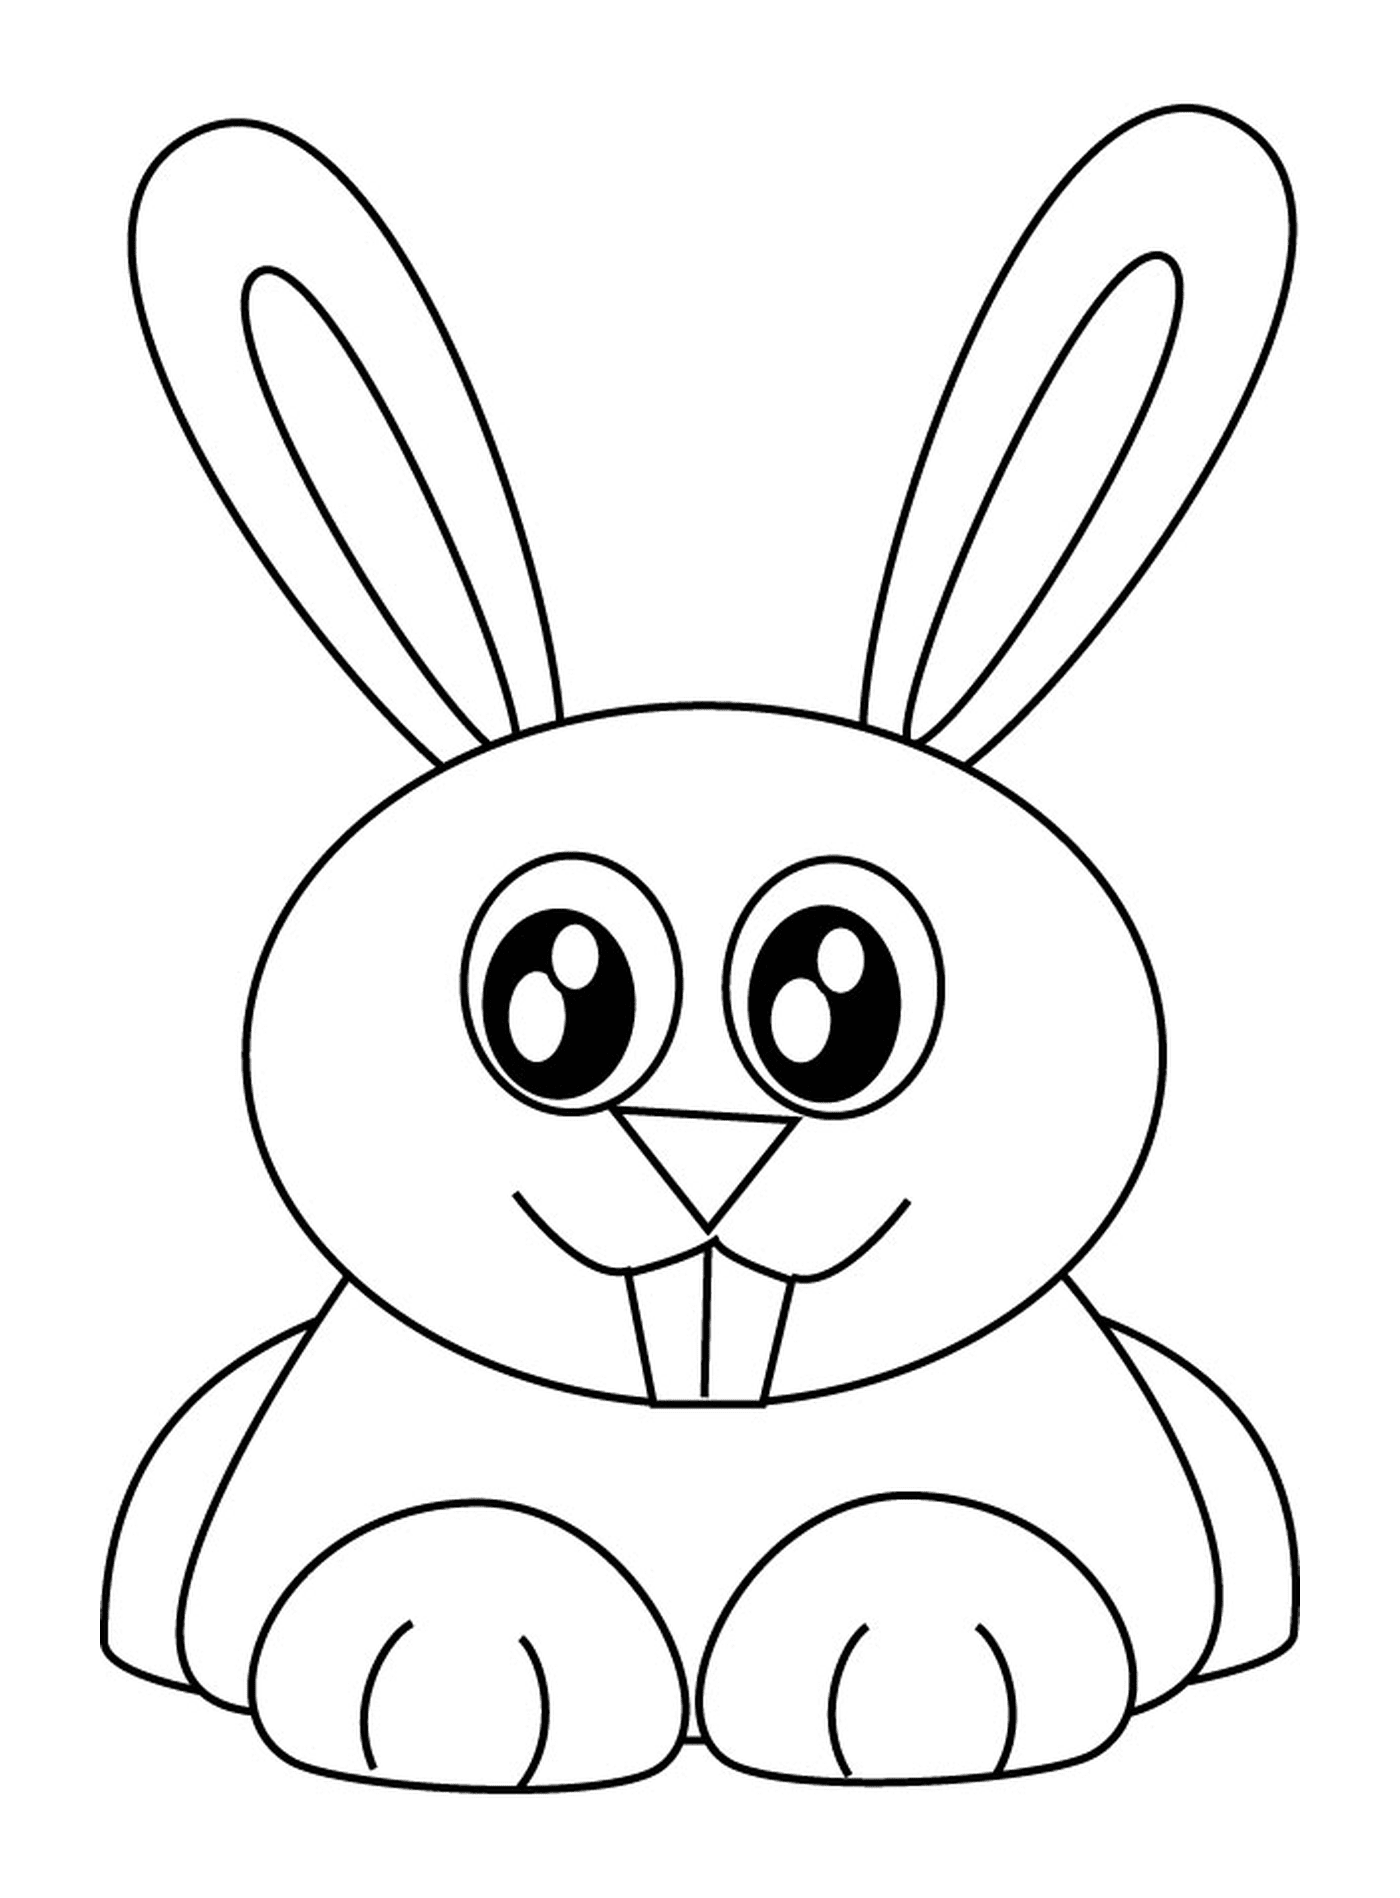  Adorabile coniglietto coniglietto coniglietto coniglietto coniglietto coniglietto coniglietto coniglietto coniglietto coniglietto coniglietto coniglietto coniglietto coniglietto coniglietto coniglietto coniglietto coniglietto coniglietto coniglietto coniglietto coniglietto 